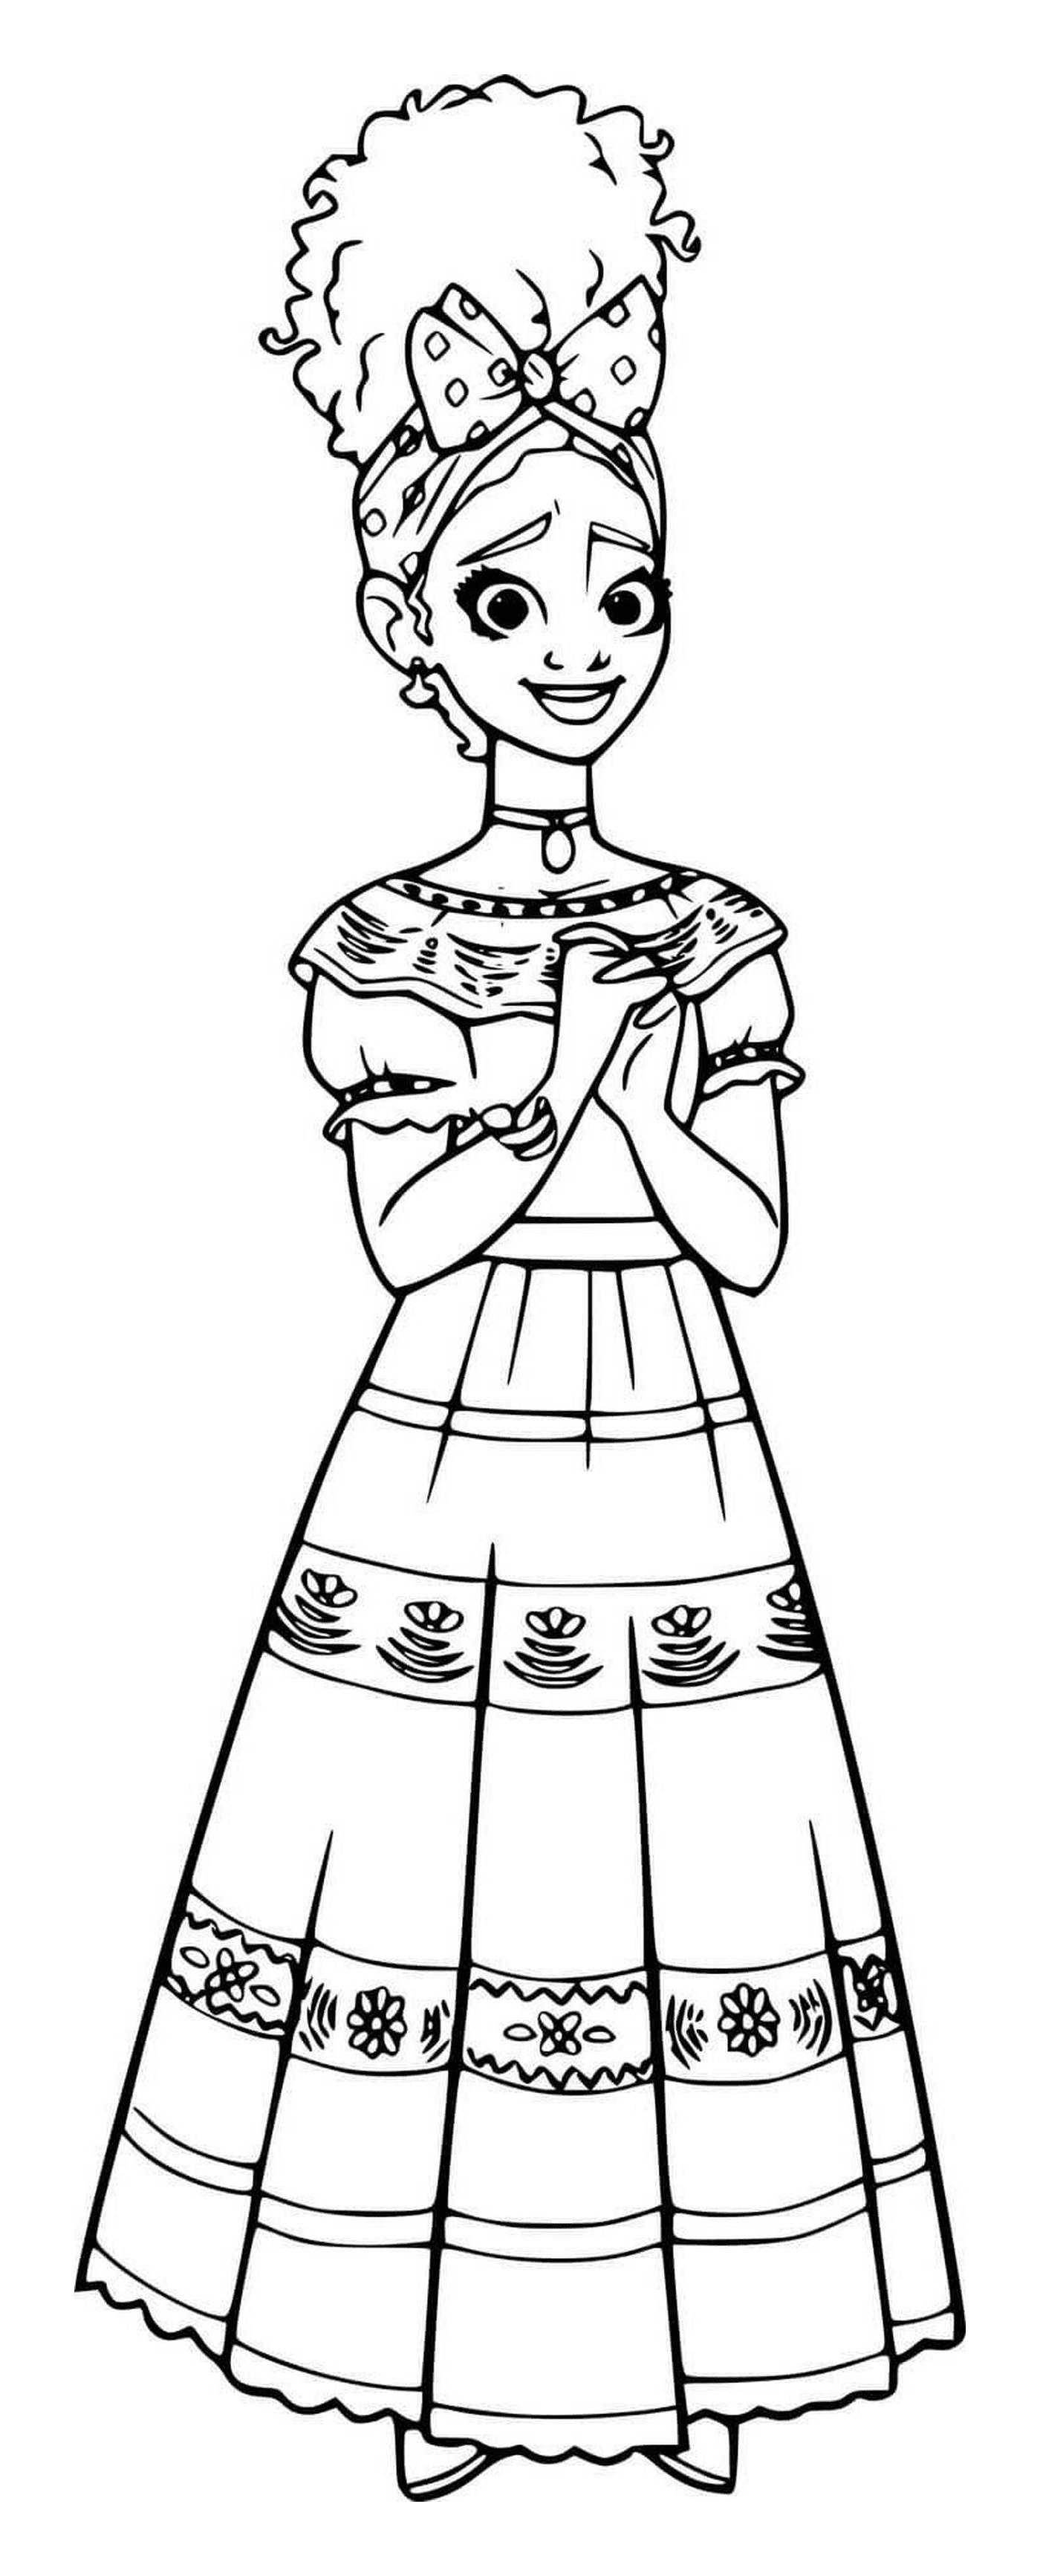  Dolores Madrigal en un vestido 